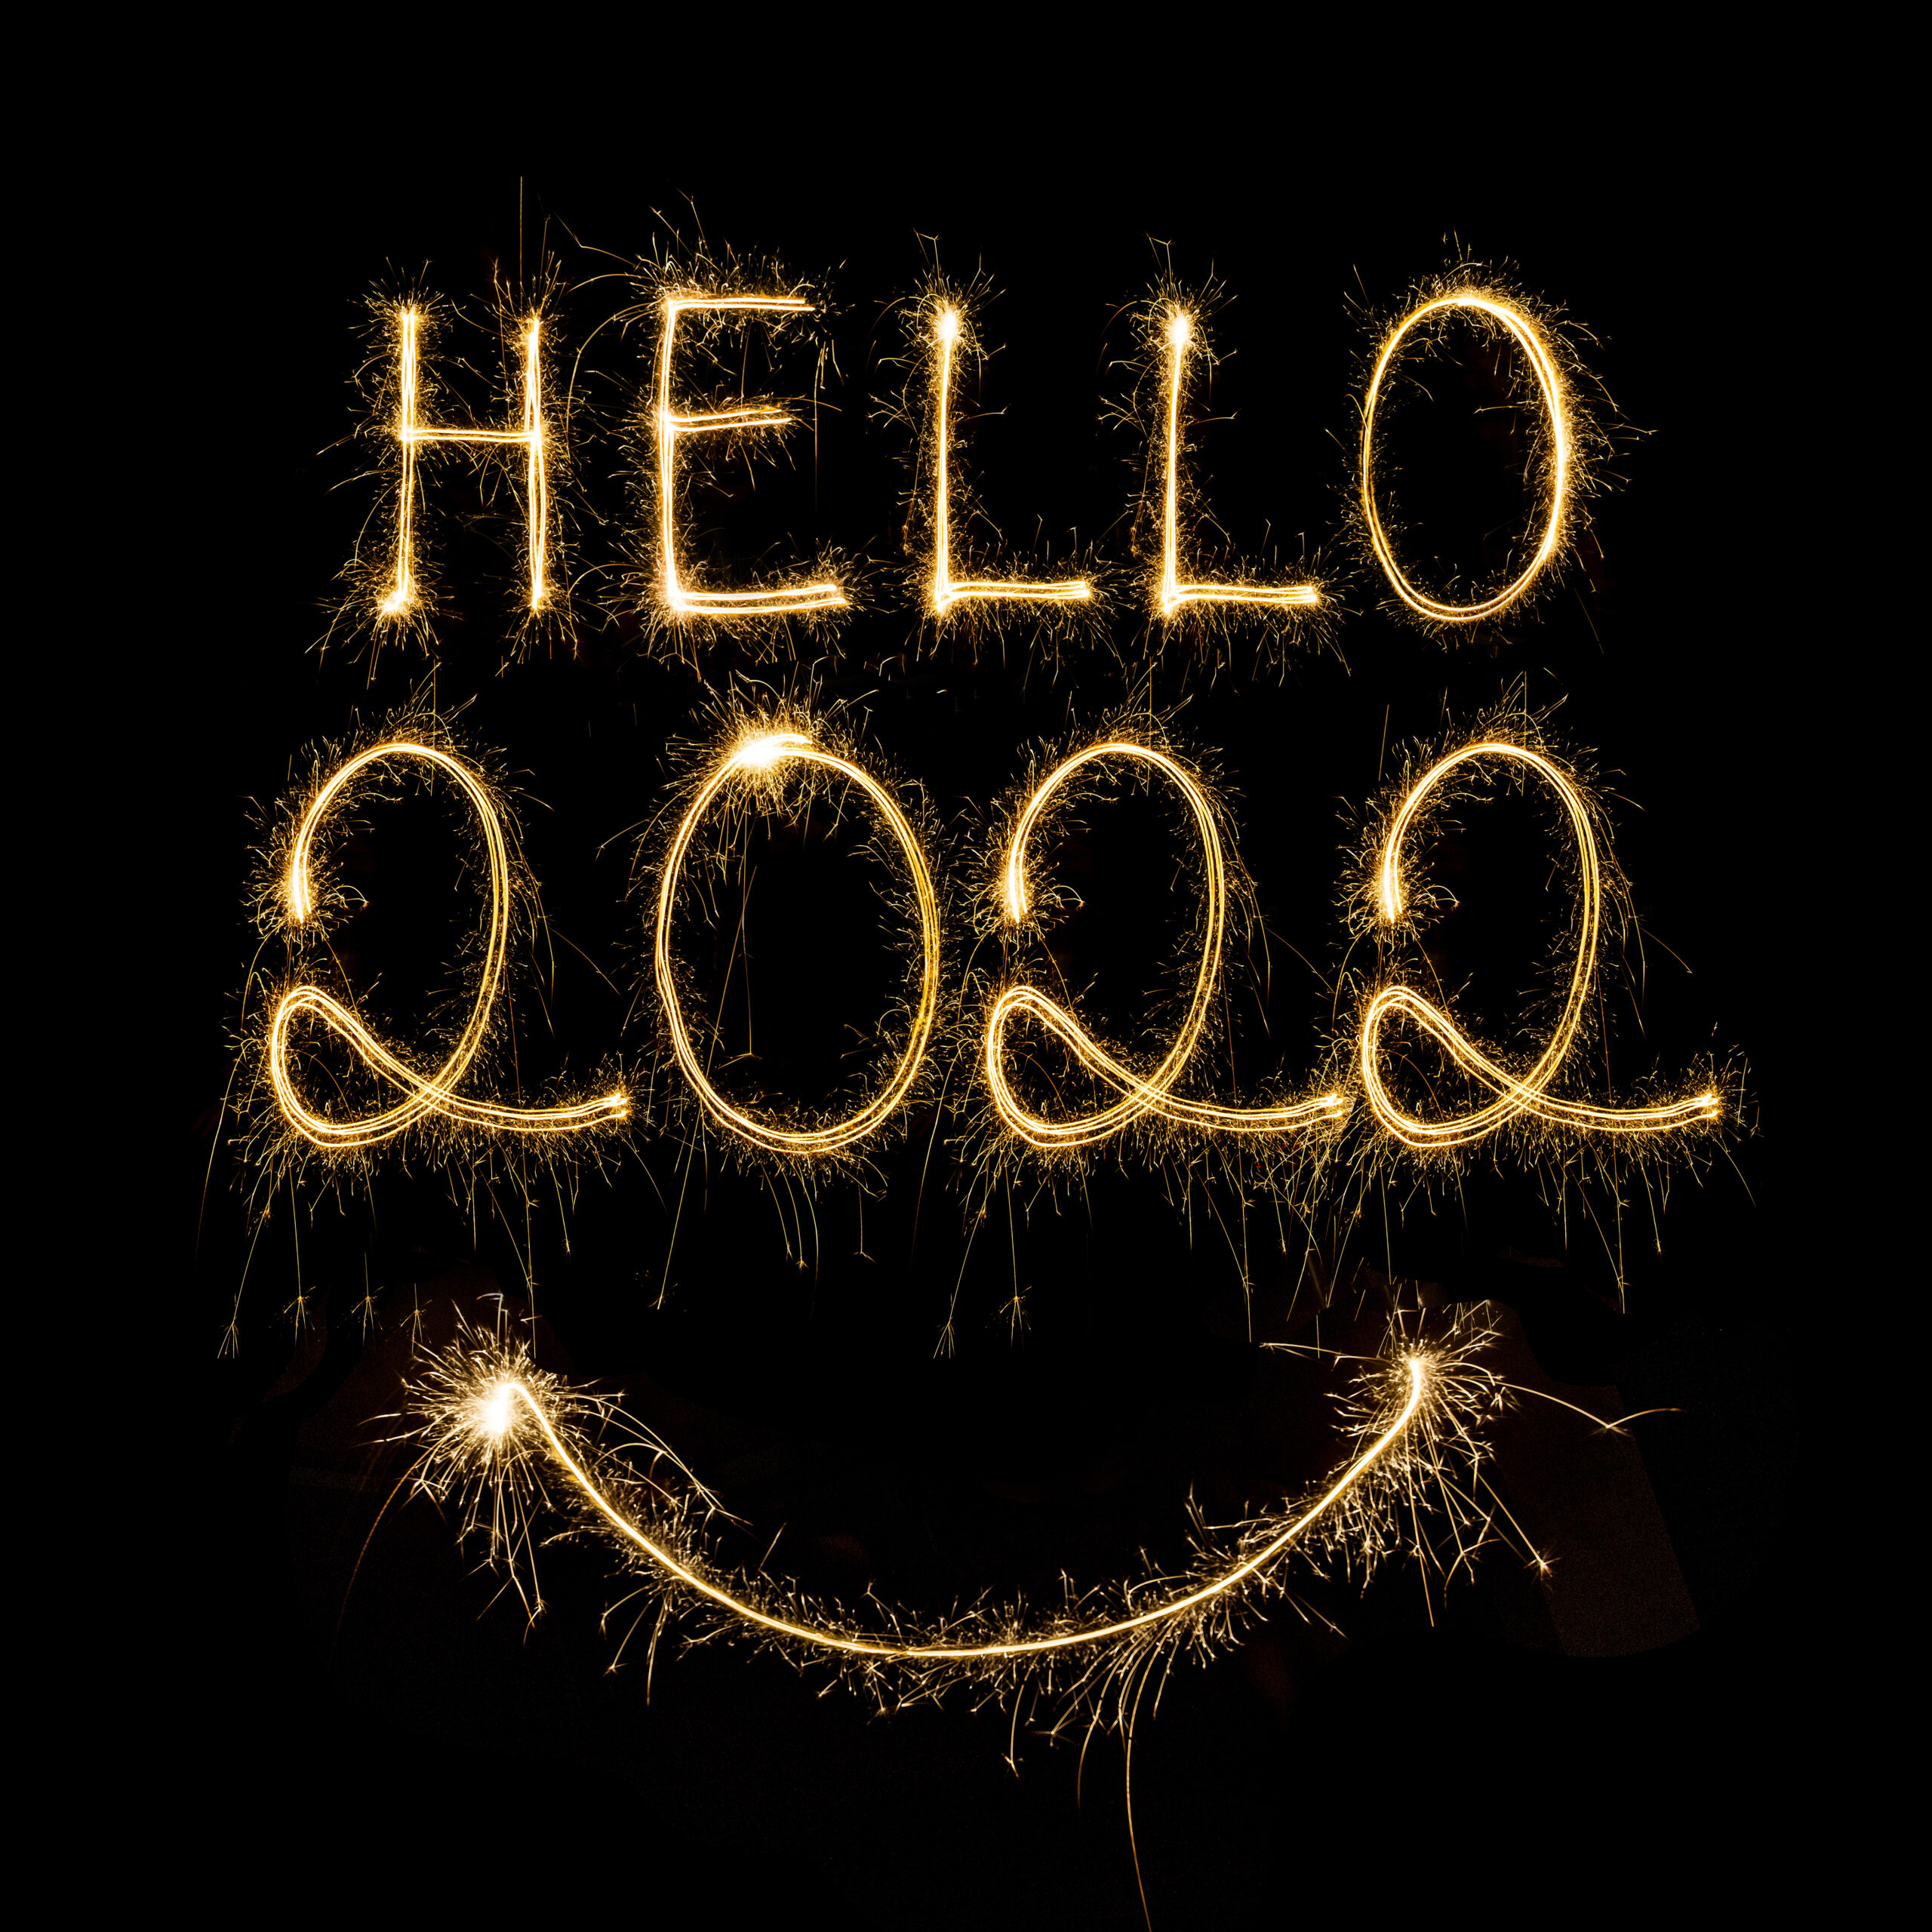 Votre auto-école vous souhaite une superbe année 2022 !